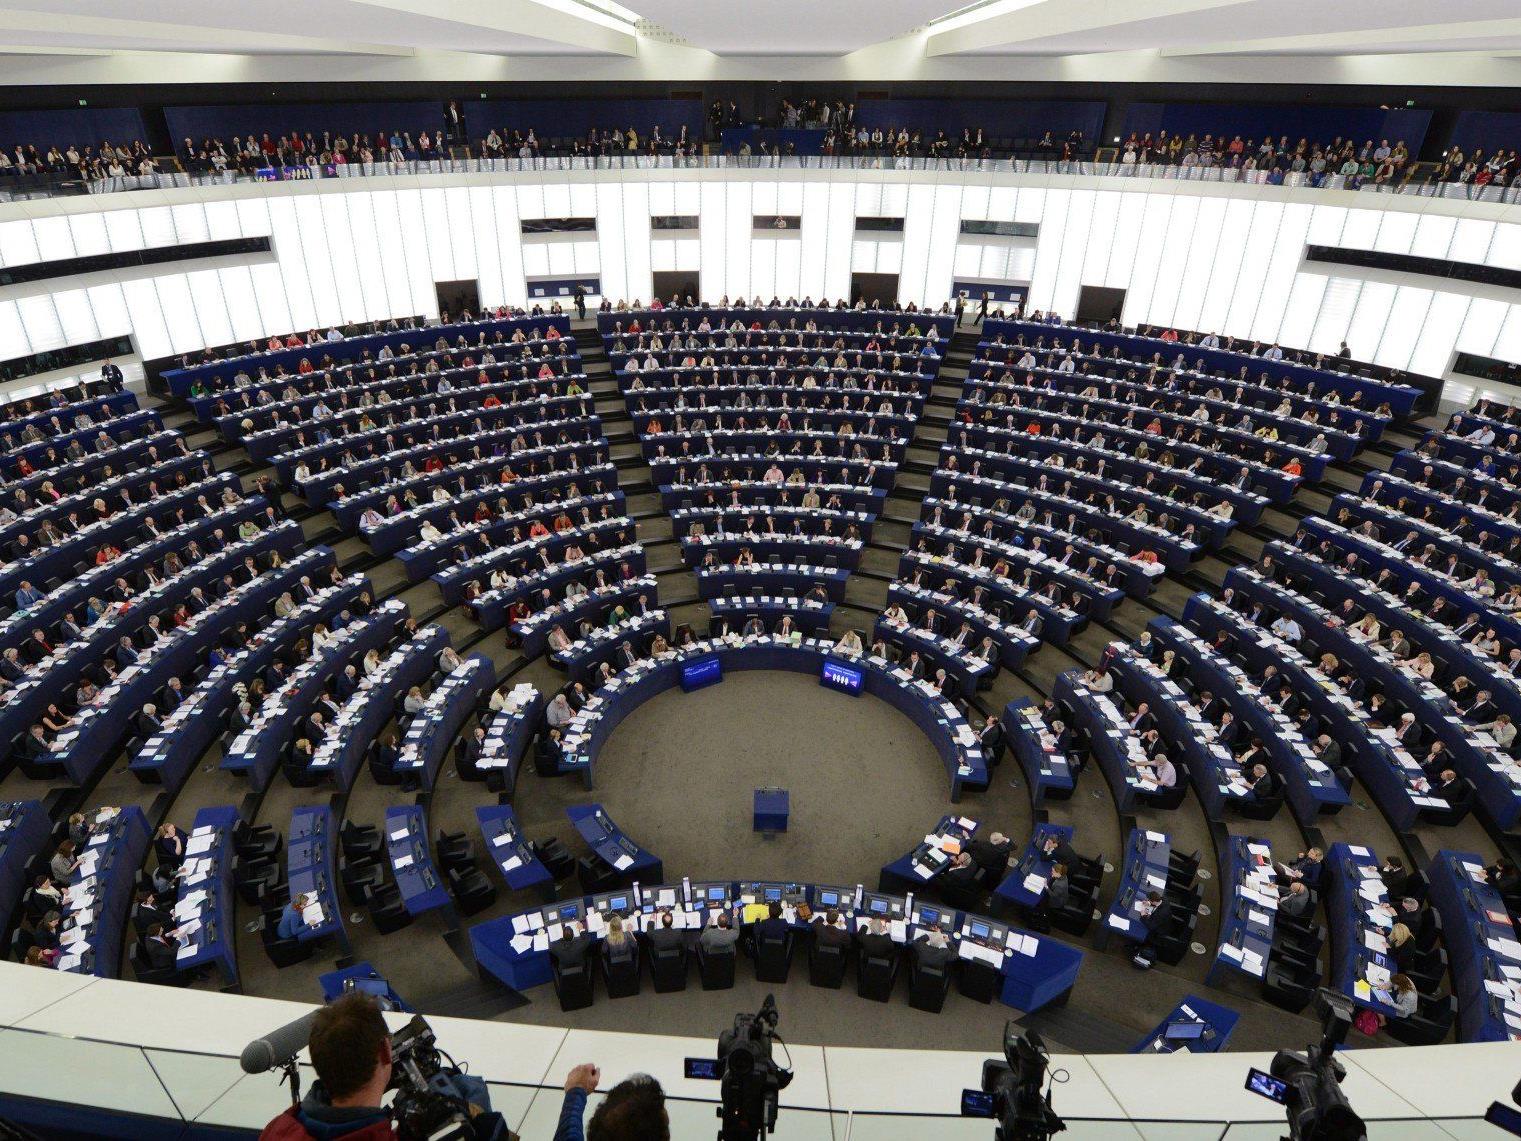 28 unterschiedliche Wahlsysteme und 751 Abgeordnetenplätze im Europaparlament.